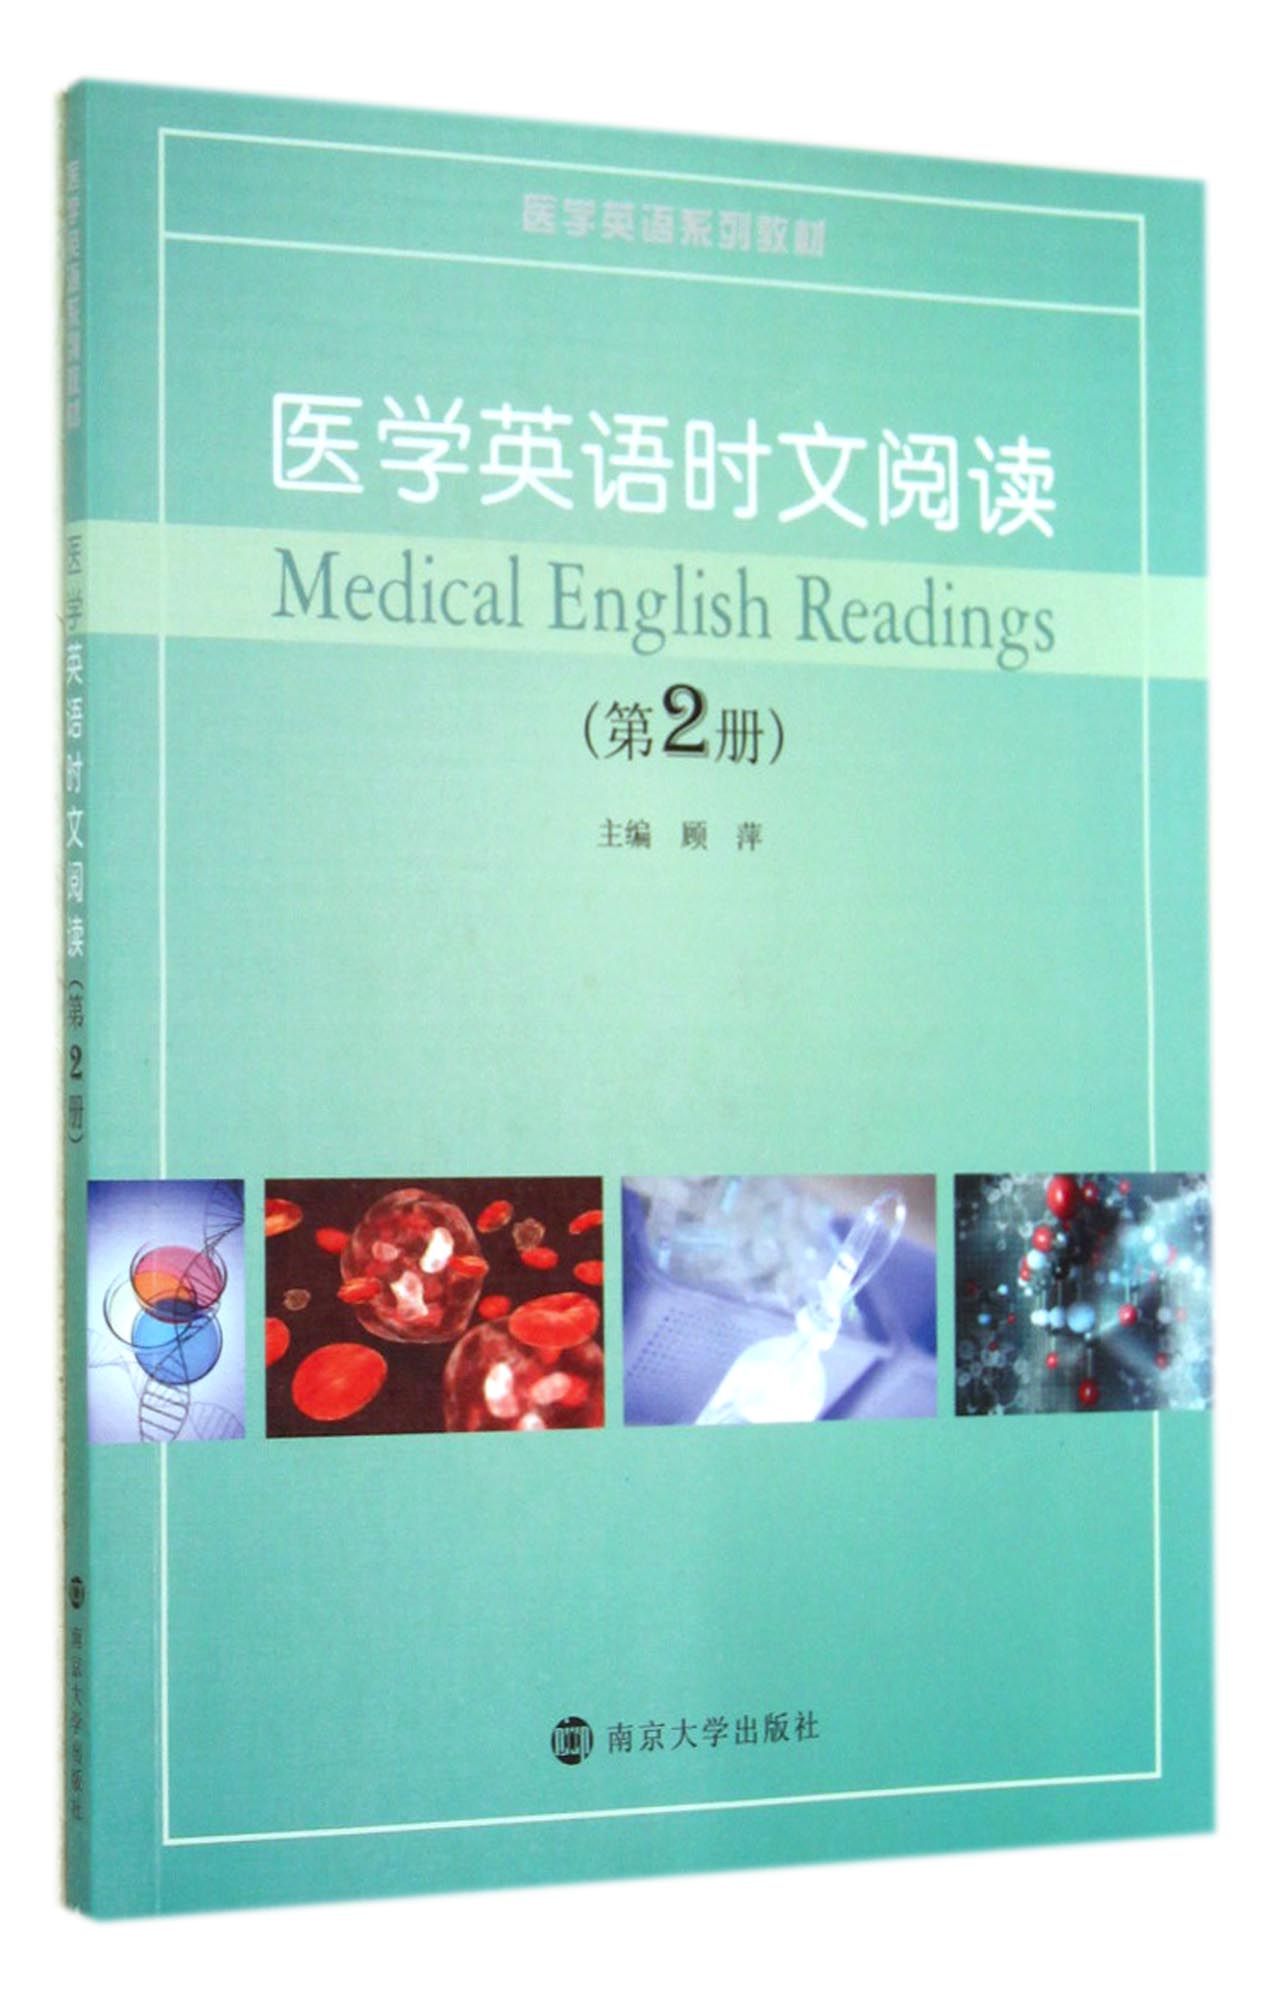 医学英语时文阅读(第2册医学英语系列教材)截图